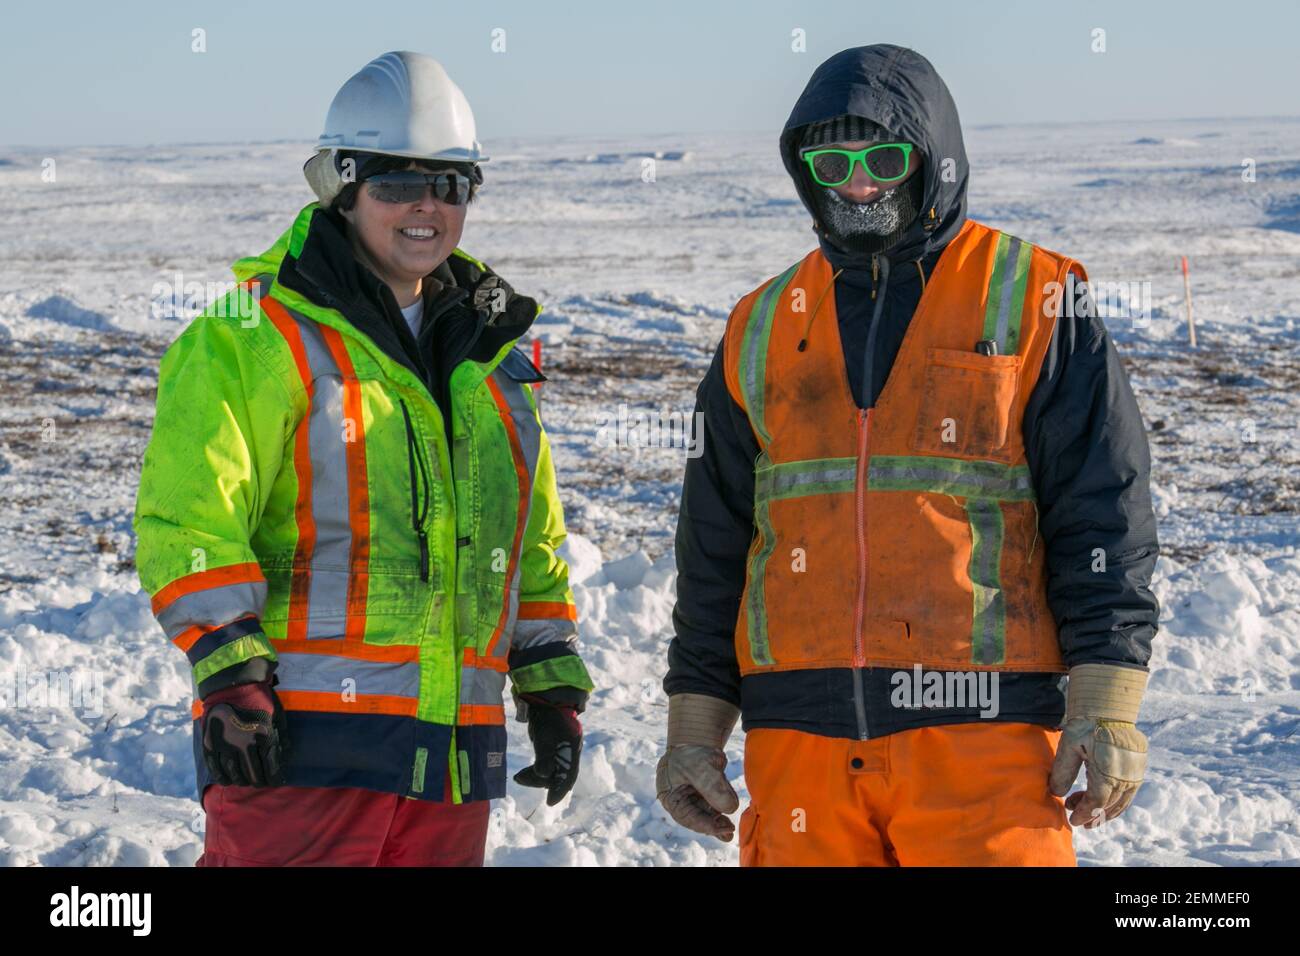 Deux travailleurs sur la route Inuvik-Tuktoyaktuk pendant la construction hivernale, dans les Territoires du Nord-Ouest, dans l'Arctique canadien. Banque D'Images